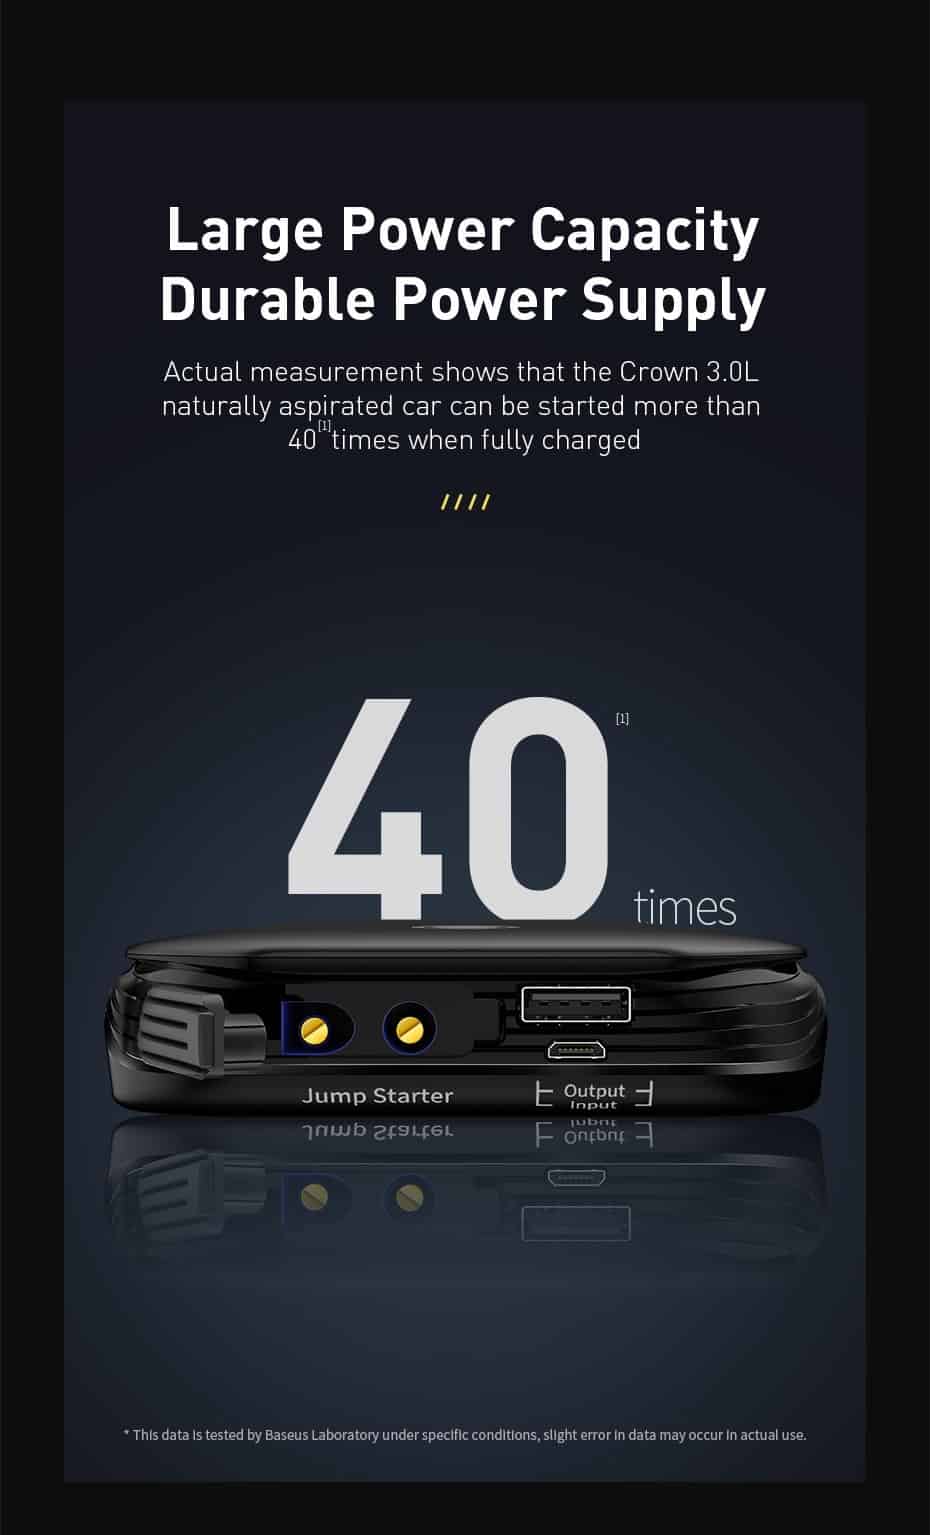 Baseus Car Jump Starter Power Bank 12V Auto Starting Device 800A Car Booster Battery Jumpstarter Emergency Buster Jumper Start